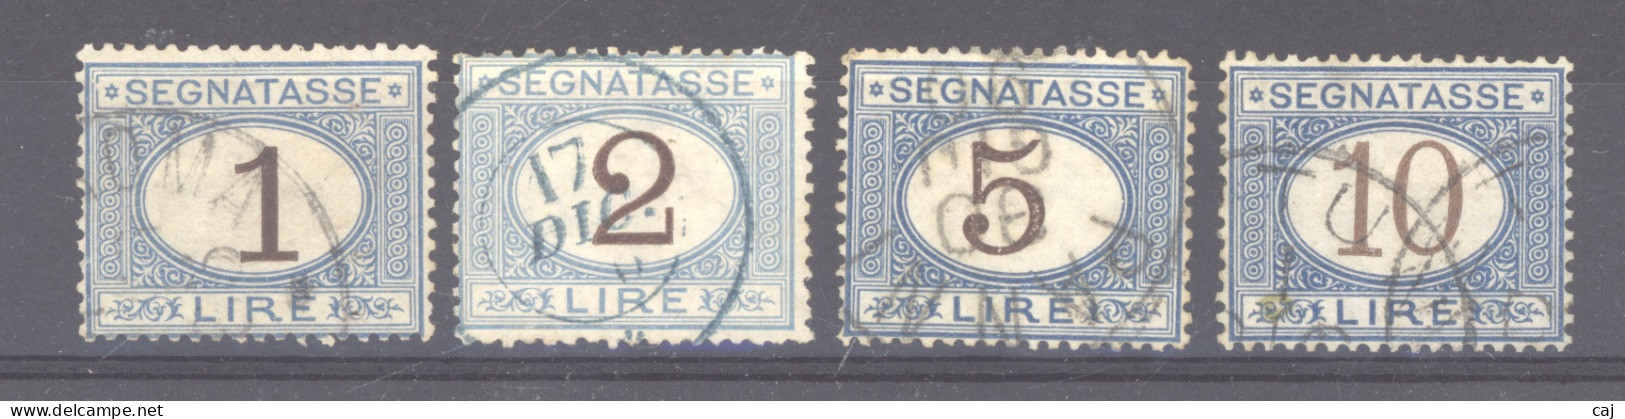 Italie  -  Taxes  :  Yv  12...18  (o)  4 Valeurs  Bleu Et Brun - Postage Due